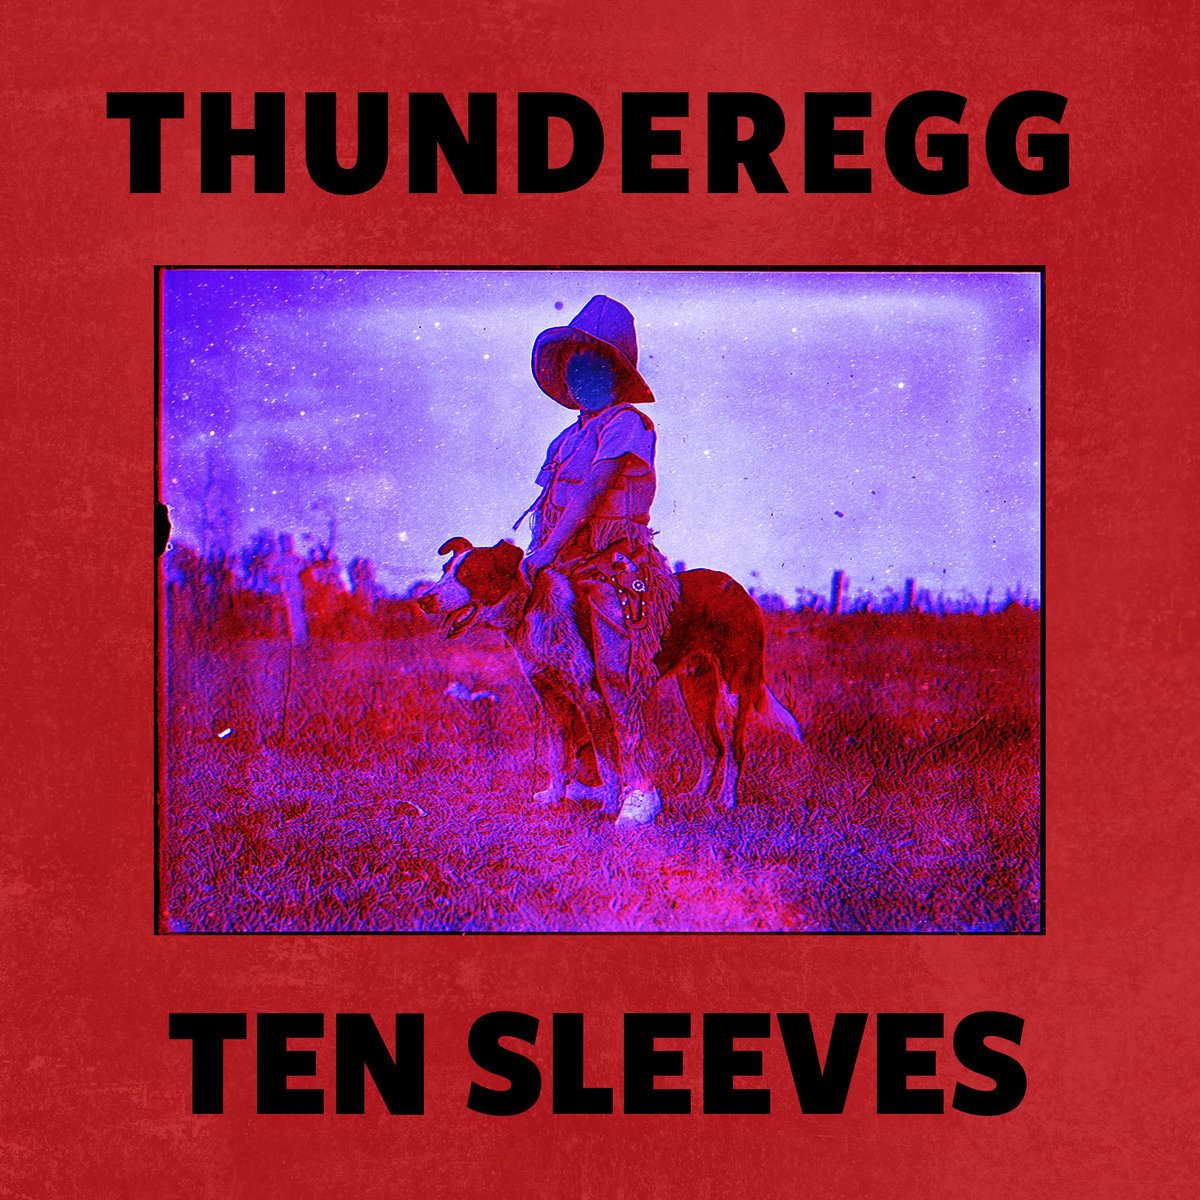 thunderegg-ten sleeves.jpg